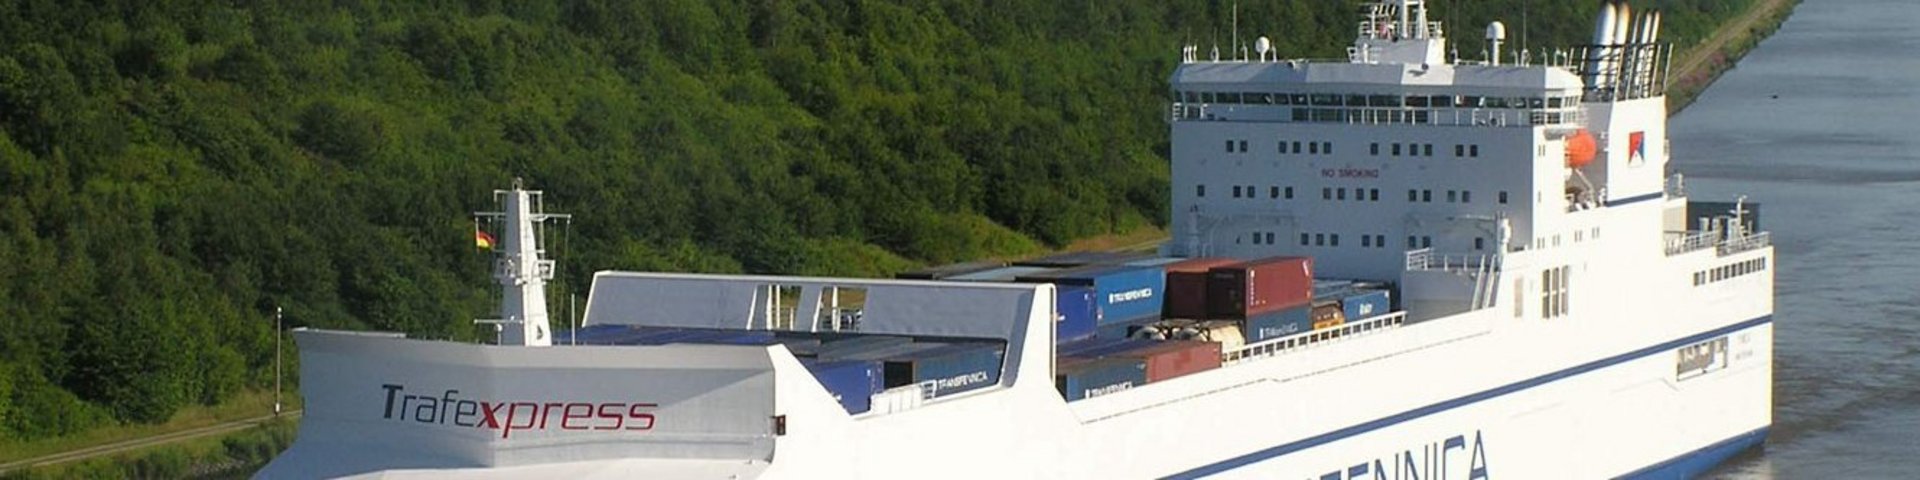 Frachtschiff für die Reise von Antwerpen nach Finnland